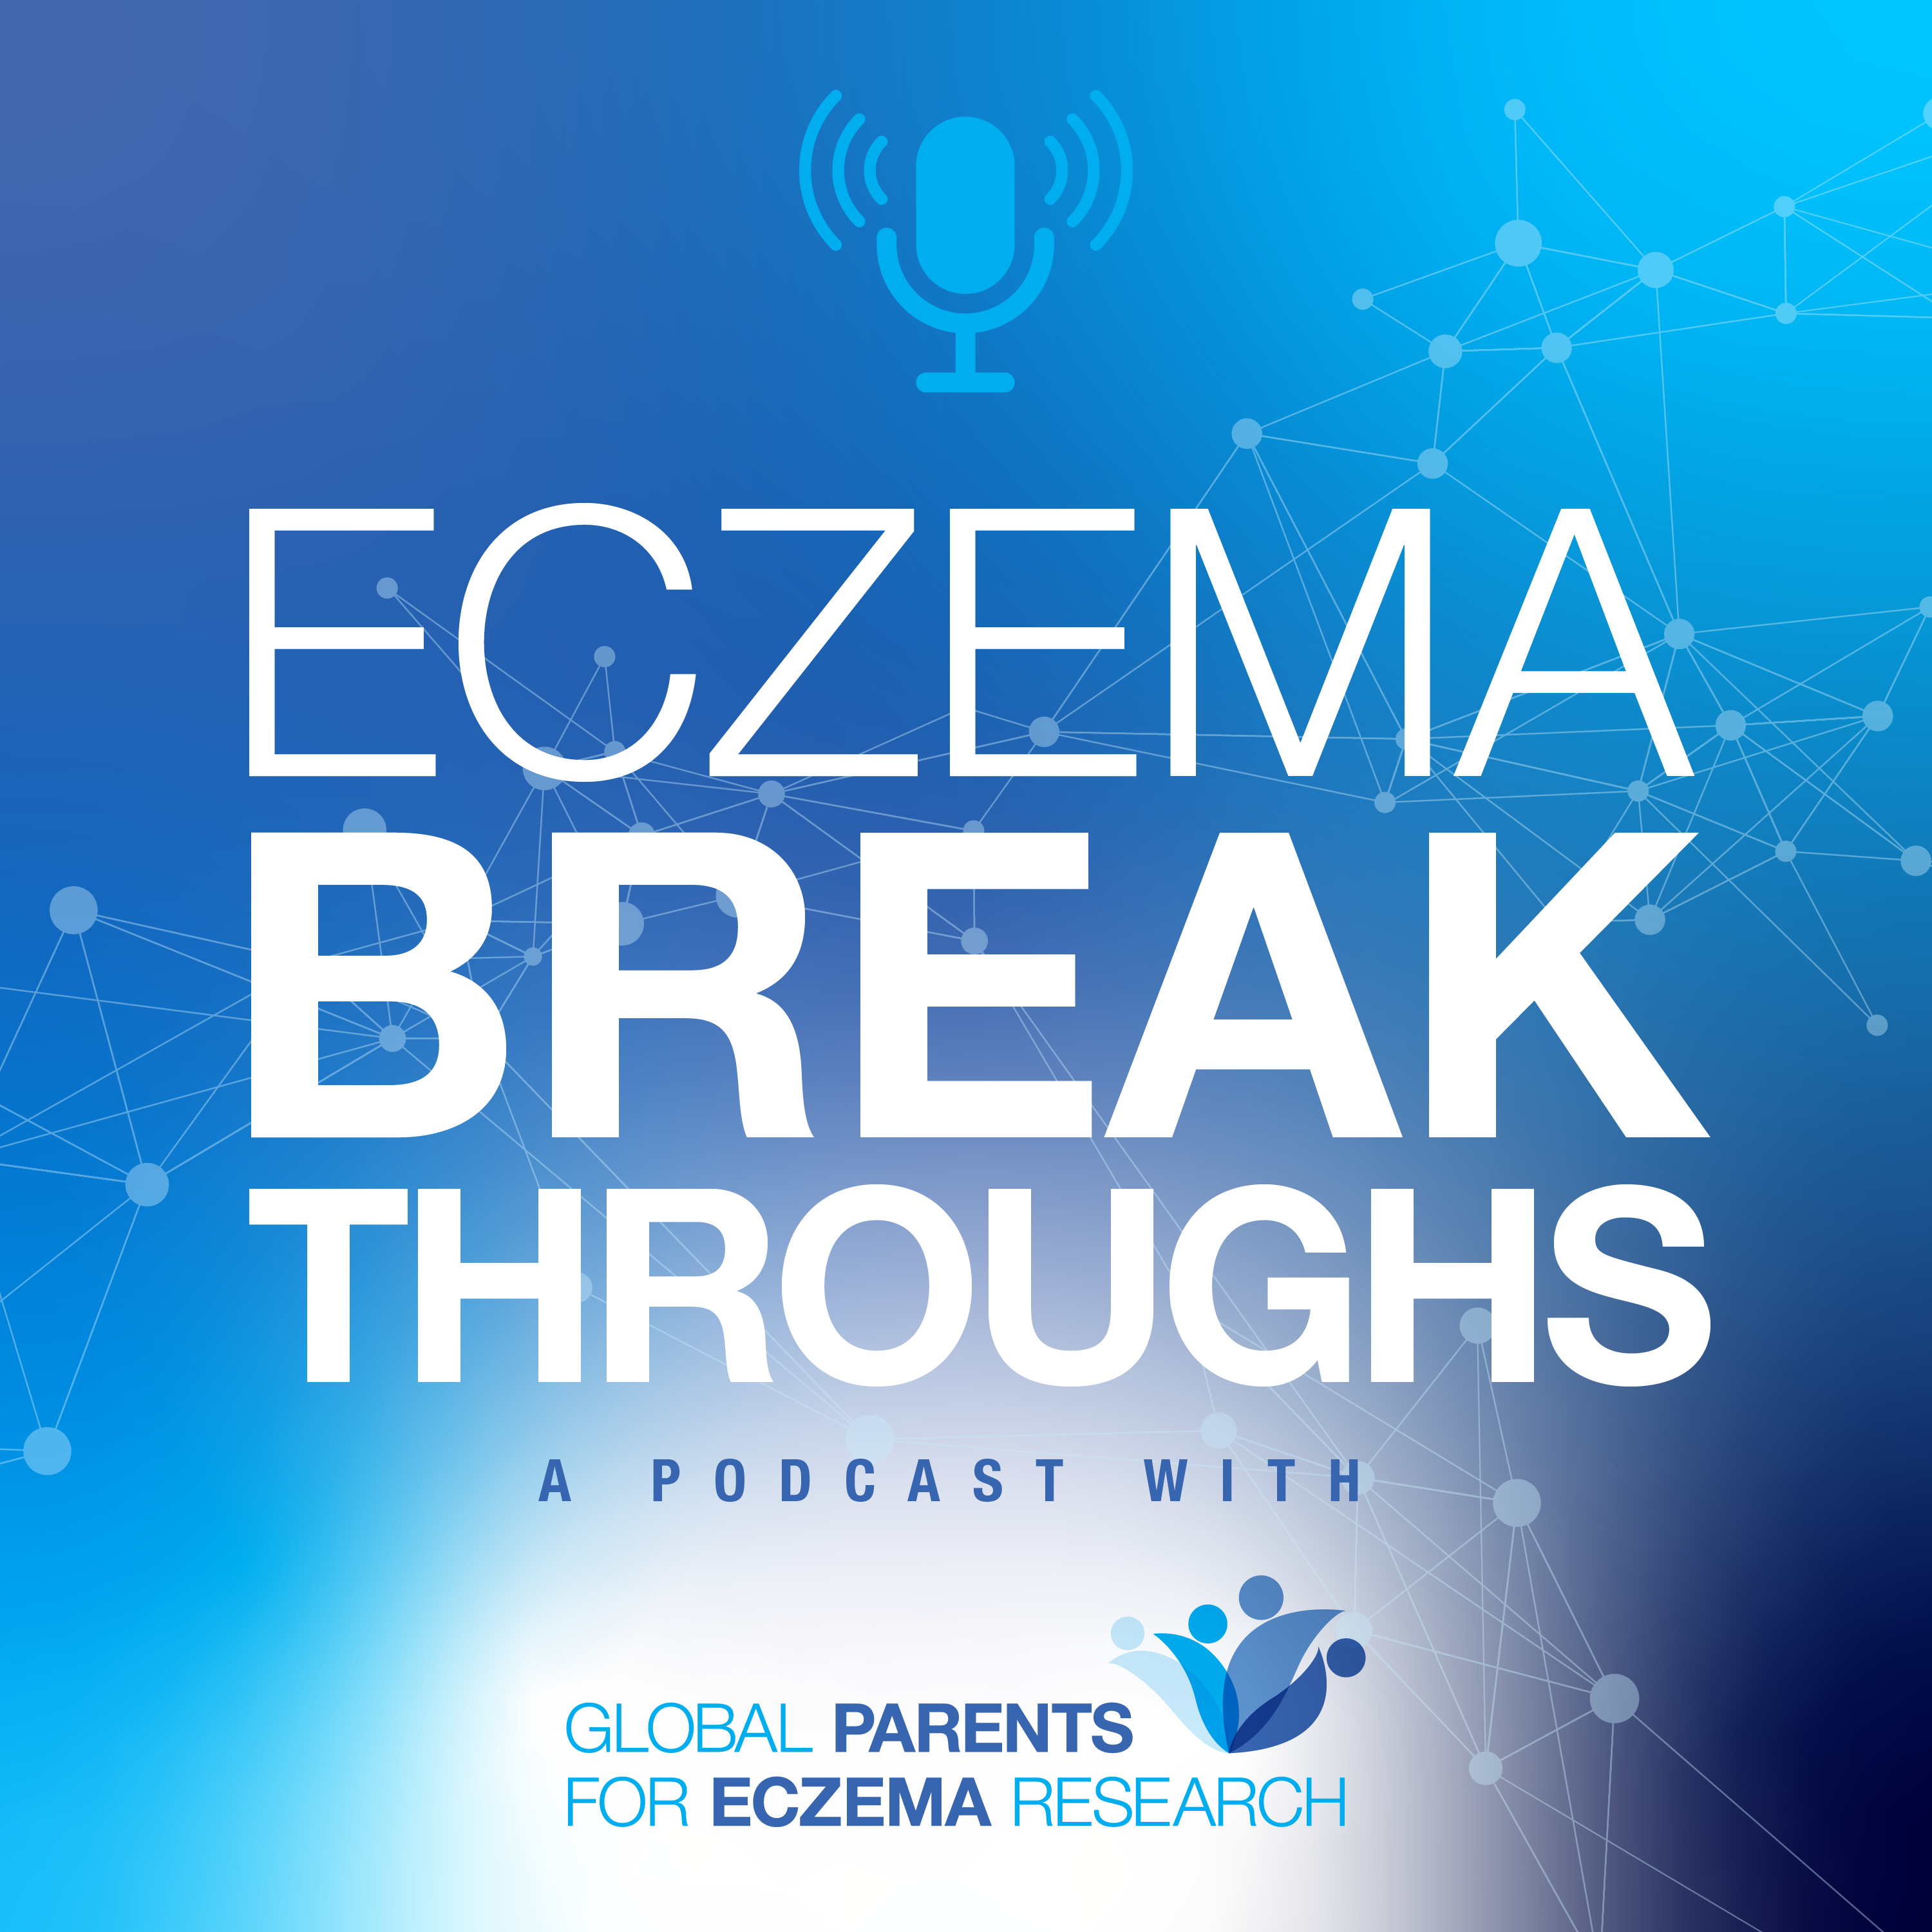 Artwork for podcast Eczema Breakthroughs